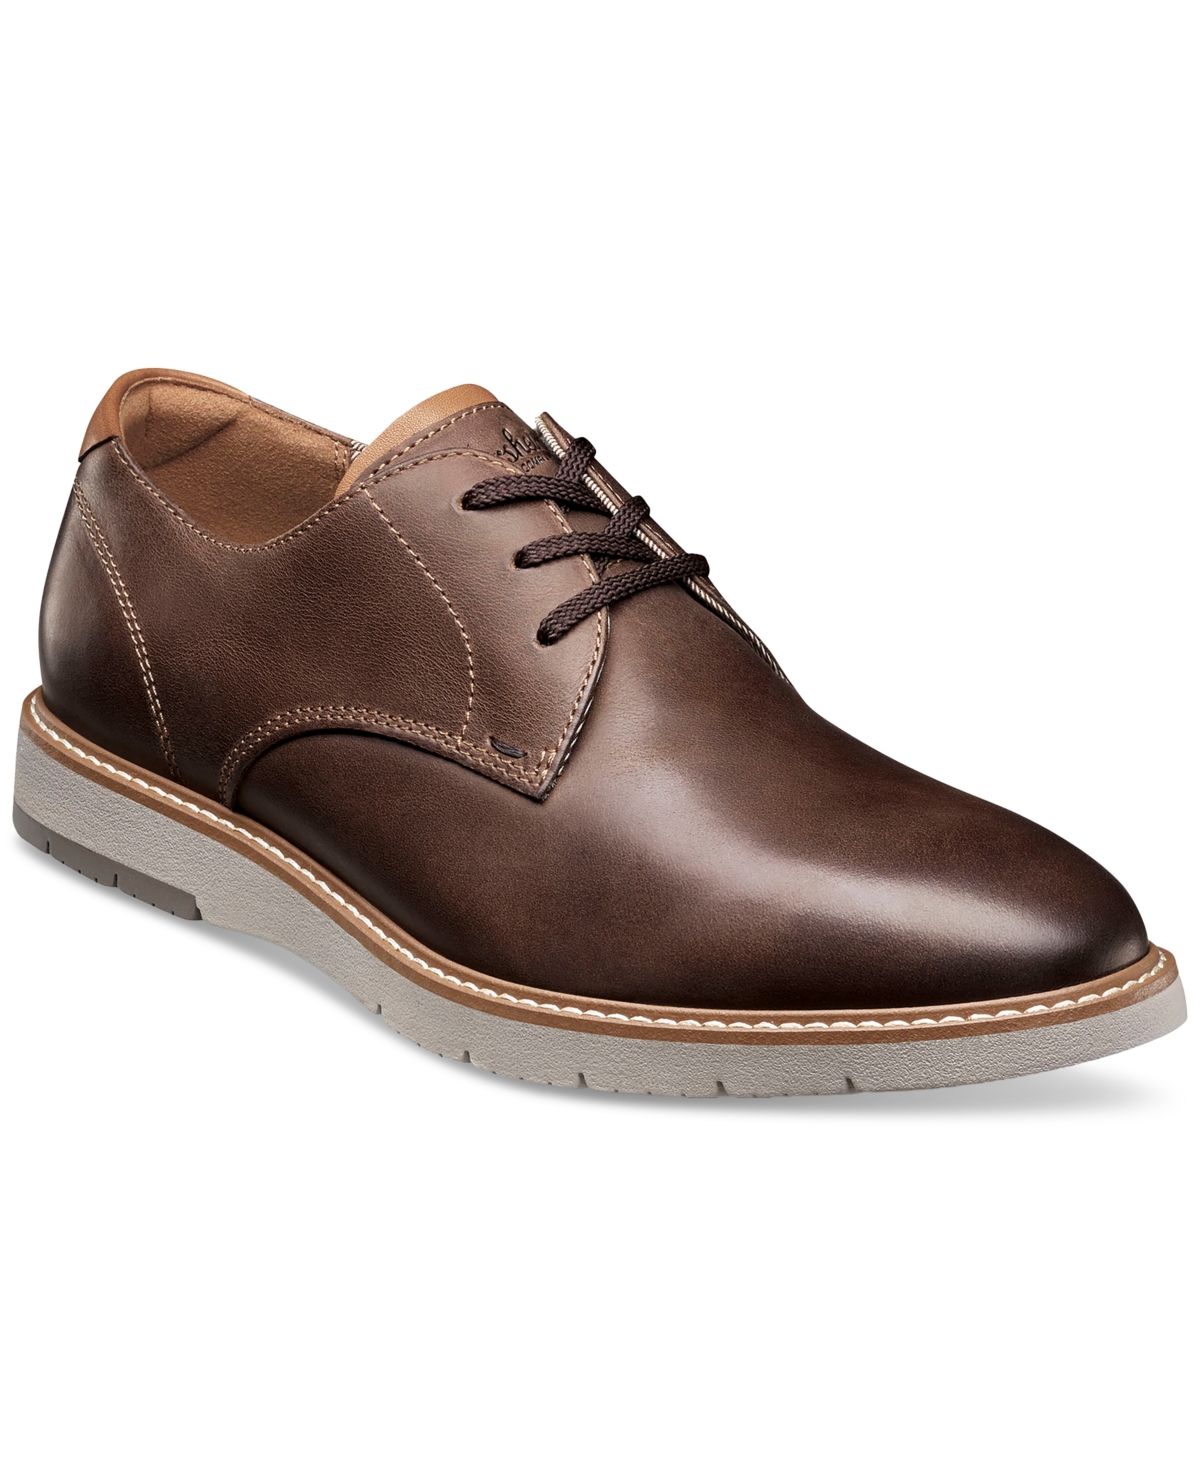 Men's Vibe Lace-Up Plain Toe Oxford Shoes - Brown Ch